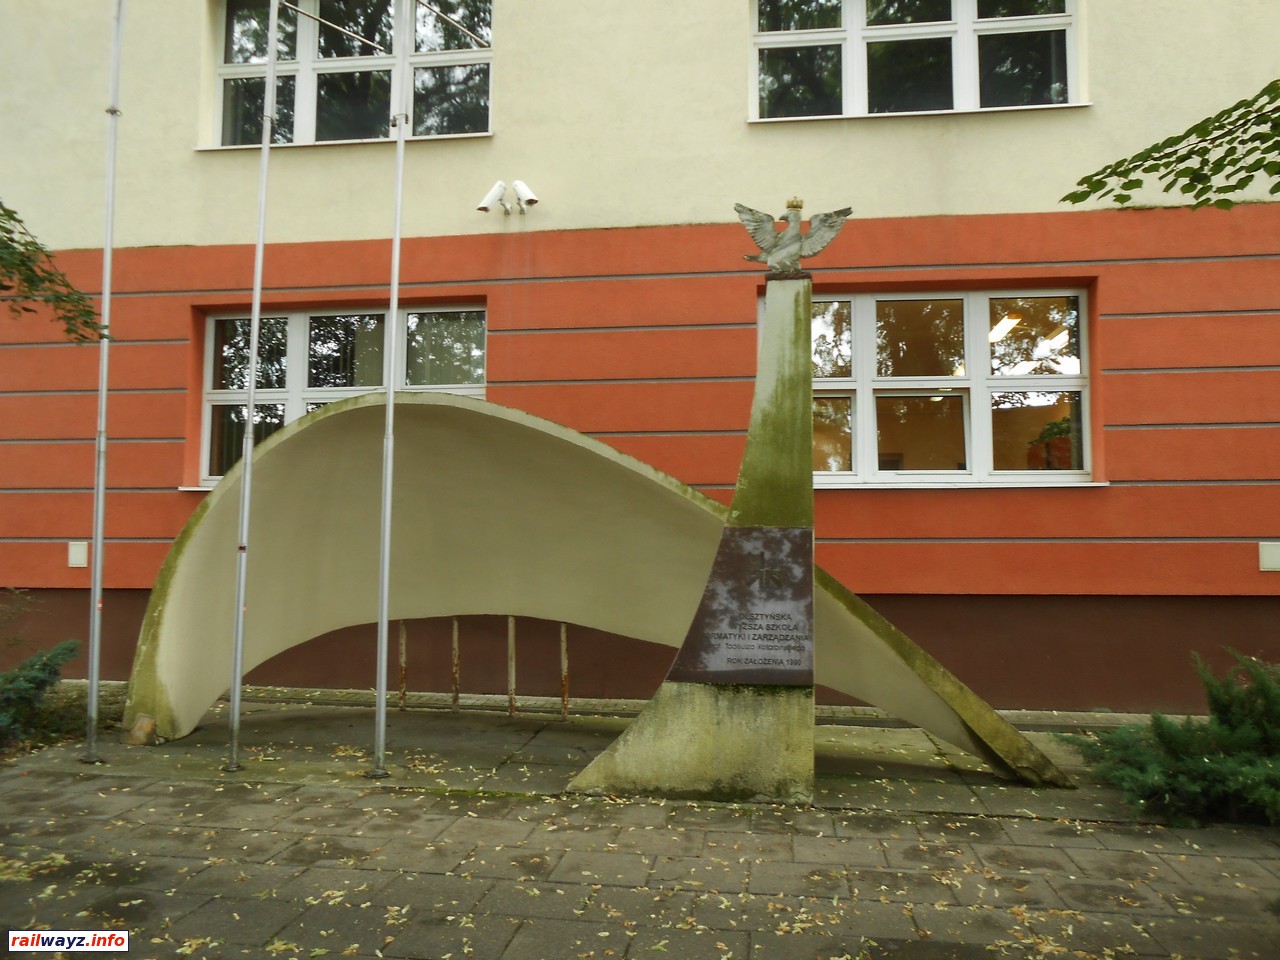 Скульптура у Ольштынской высшей школы информатики и управления